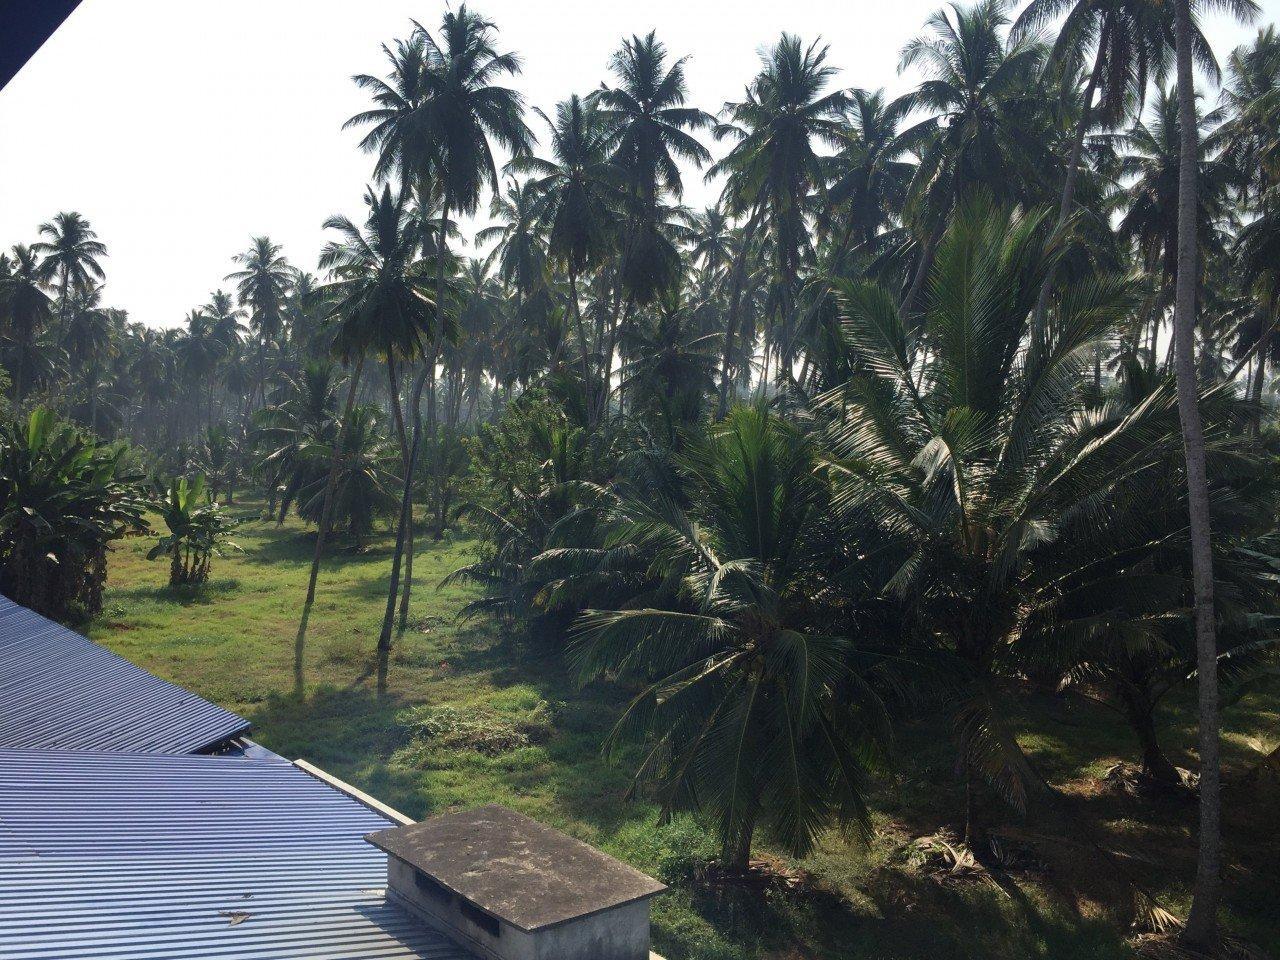 Ein toller Ausblick auf unzählige Palmen